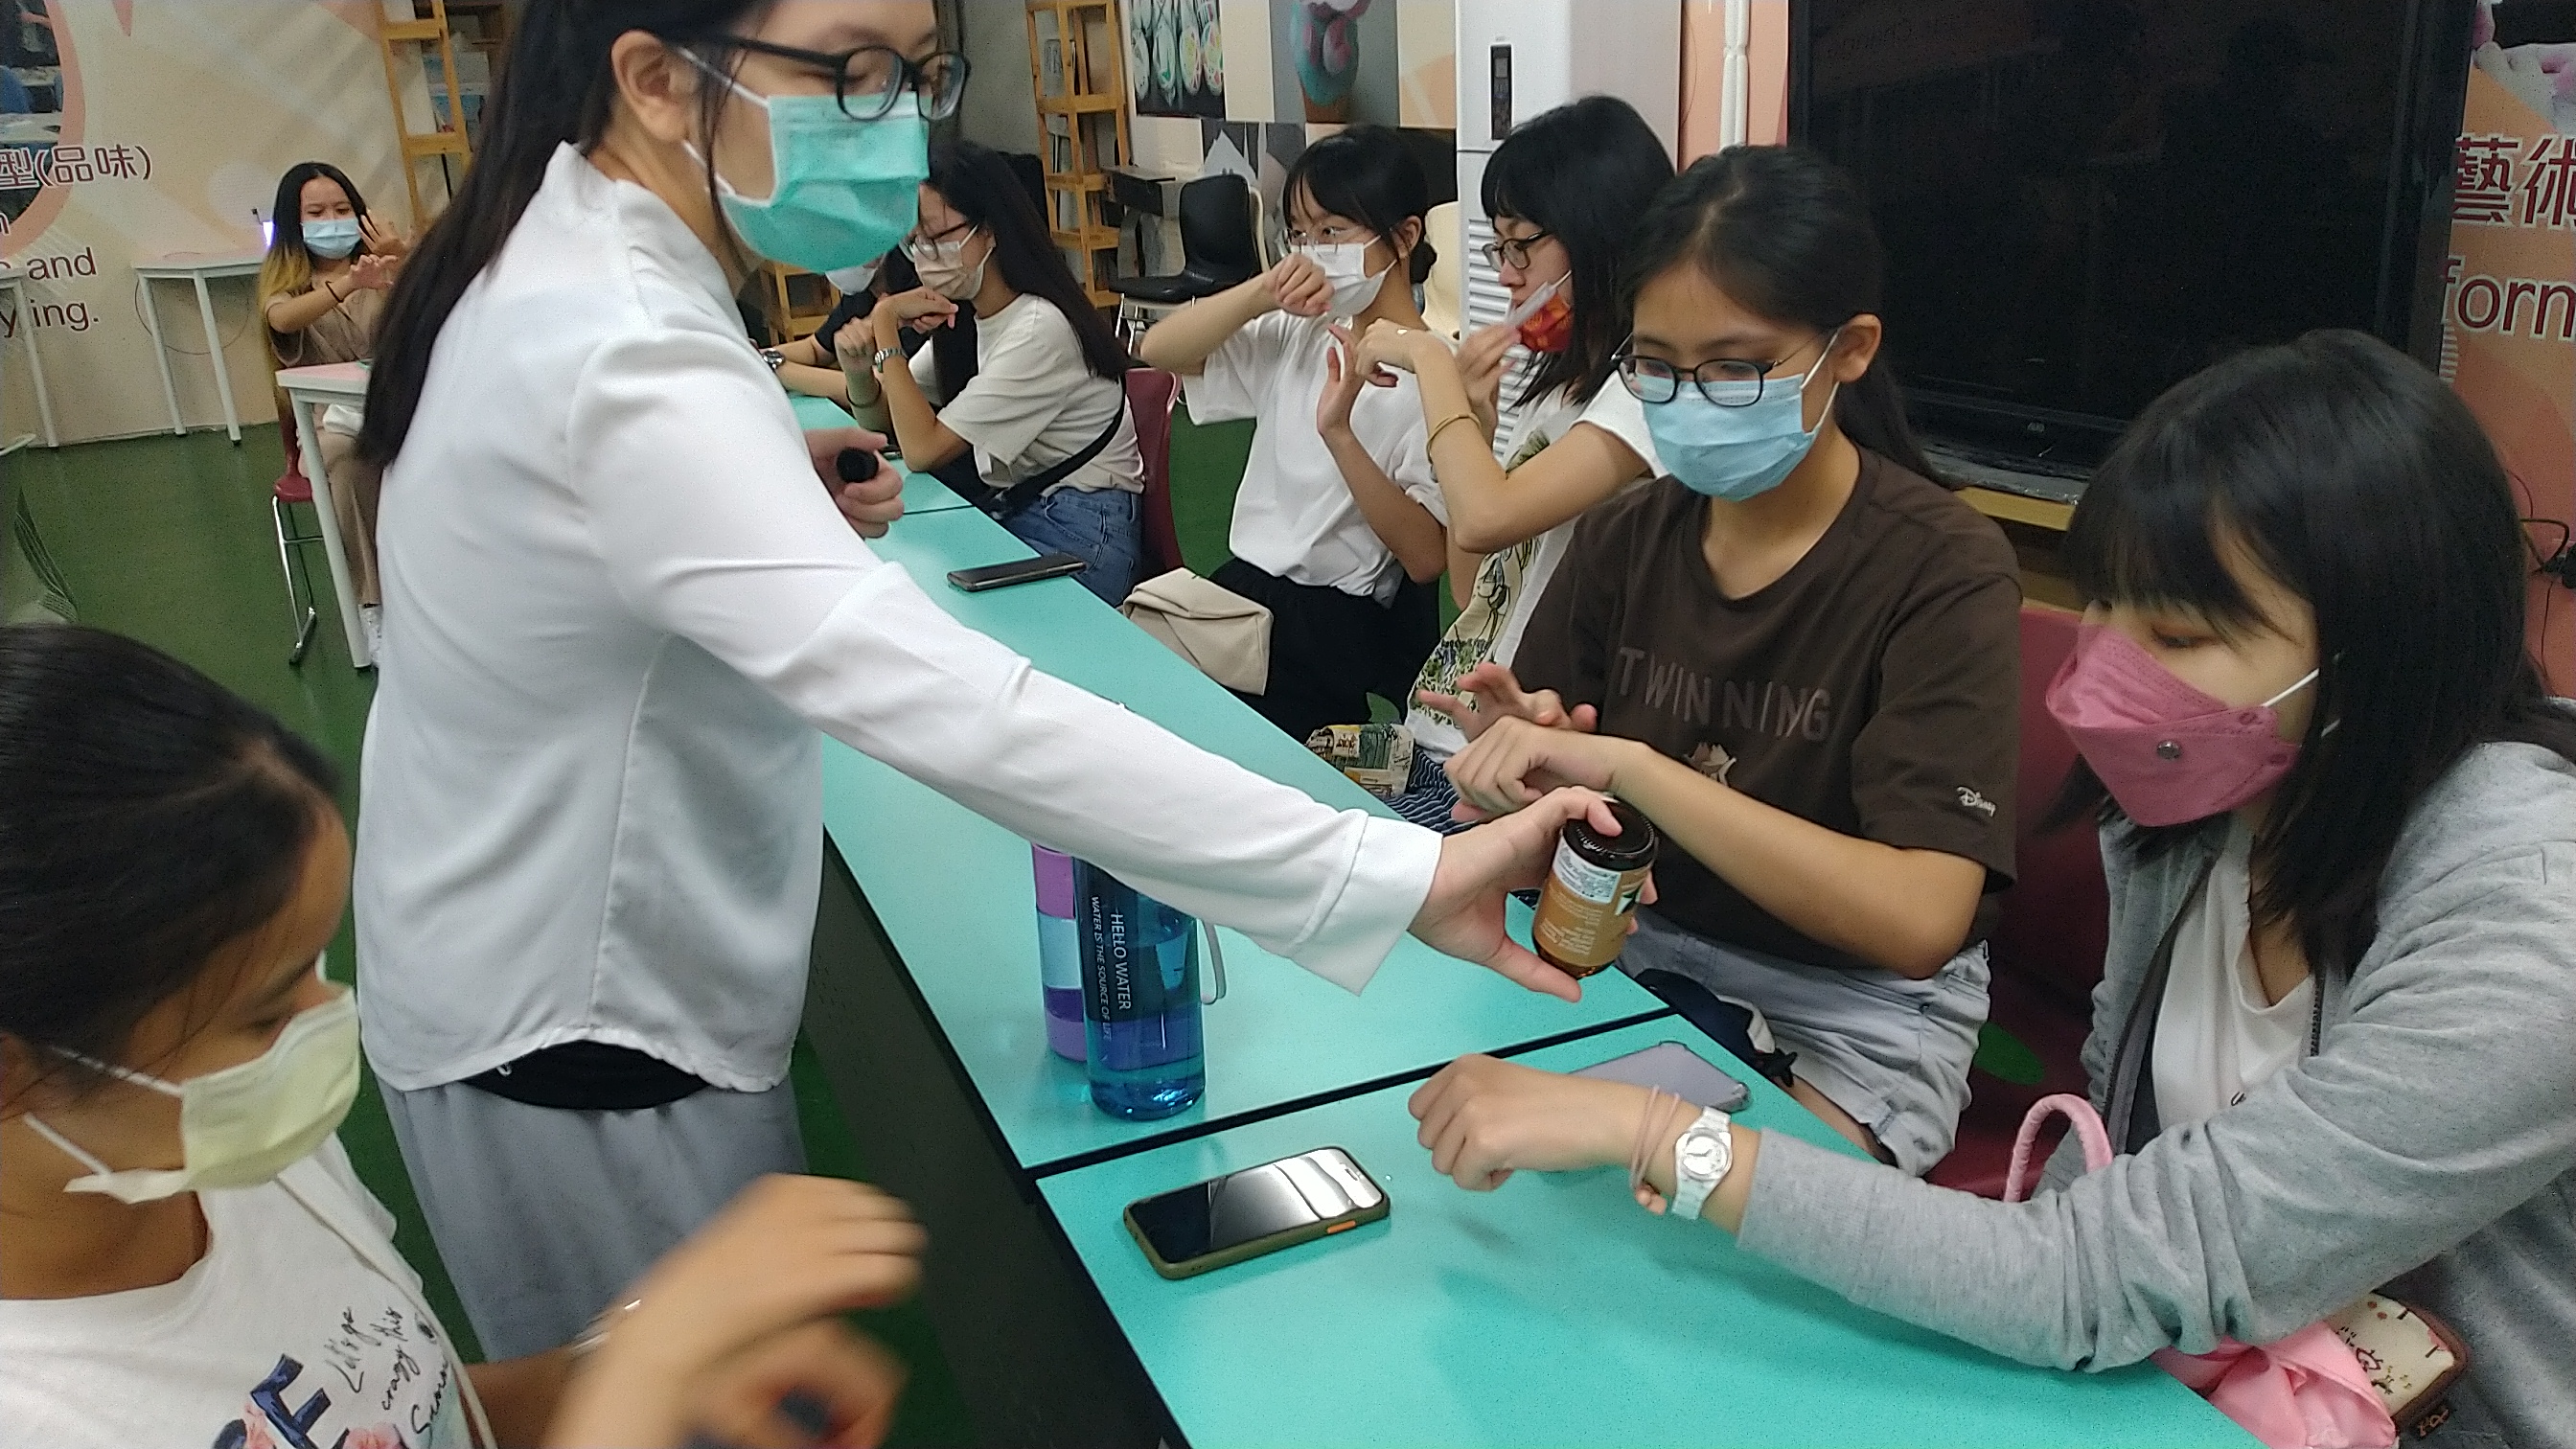 图为在亚大登峰书苑的芳香疗癒课程，参与同学们学习嗅闻精油的芳香疗法。